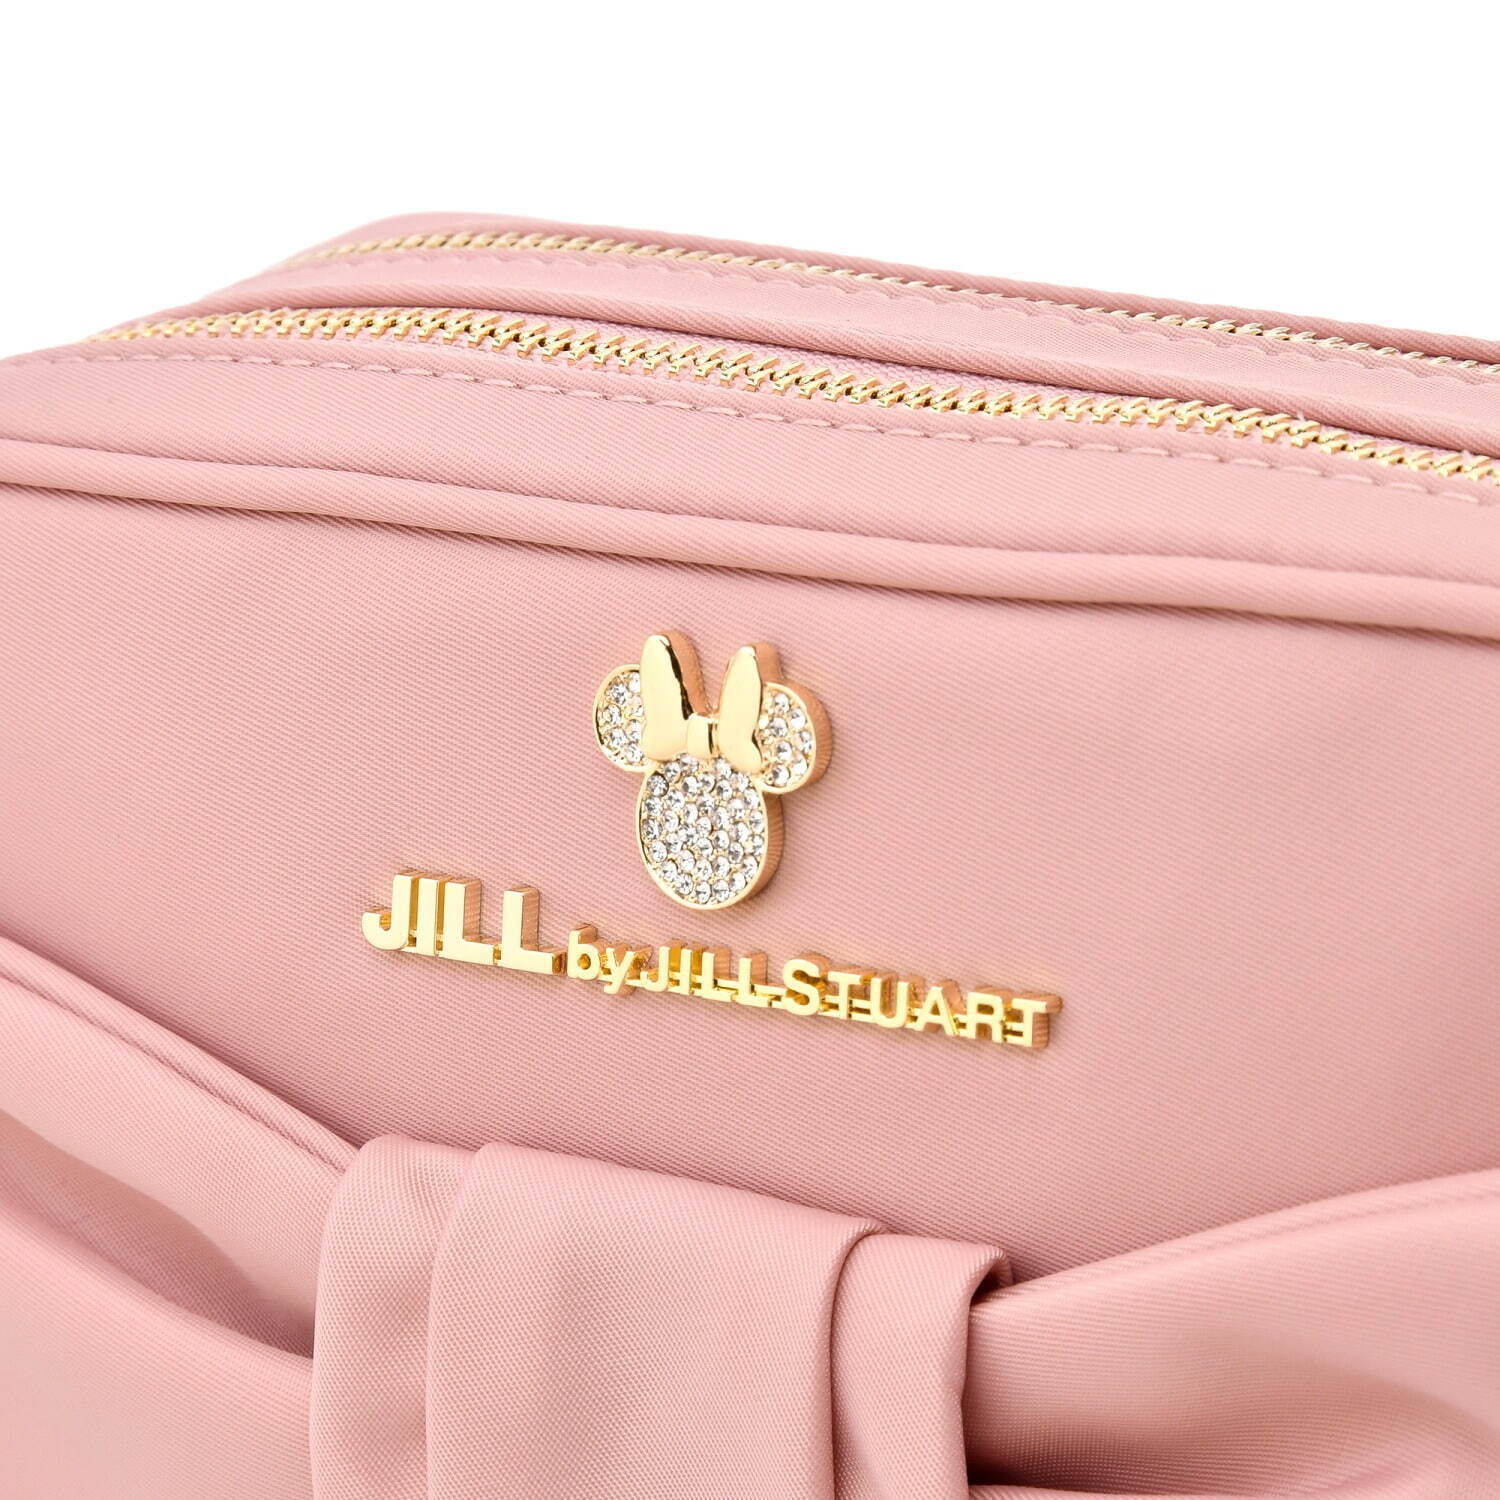 ジル by ジルスチュアート人気バッグが「ミニー」デザインに、リボンポシェットやフリルトート - ファッションプレス